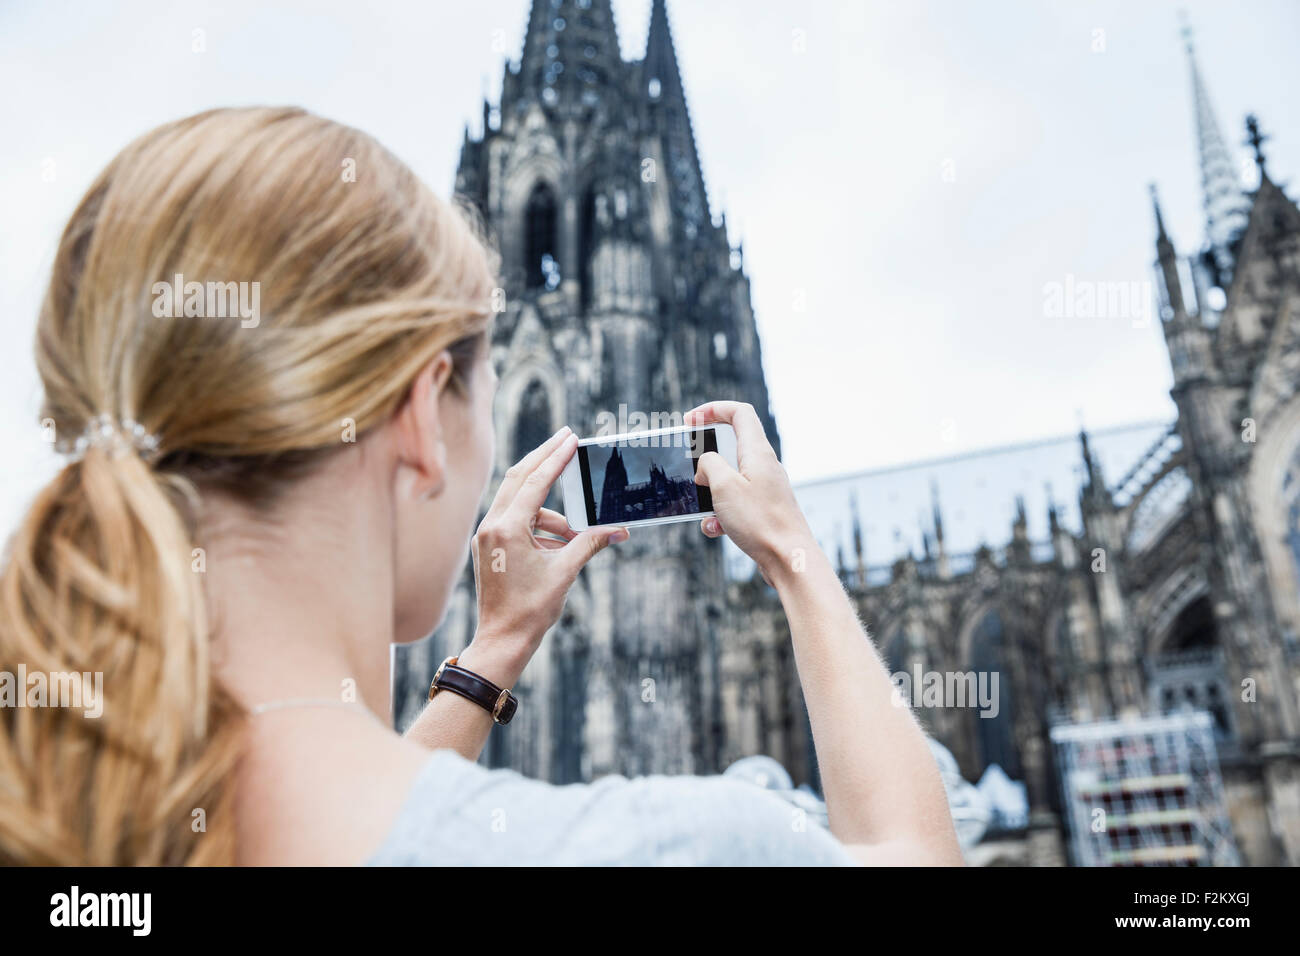 Germania, Colonia, giovane donna di scattare una foto della Cattedrale di Colonia con lo smartphone Foto Stock